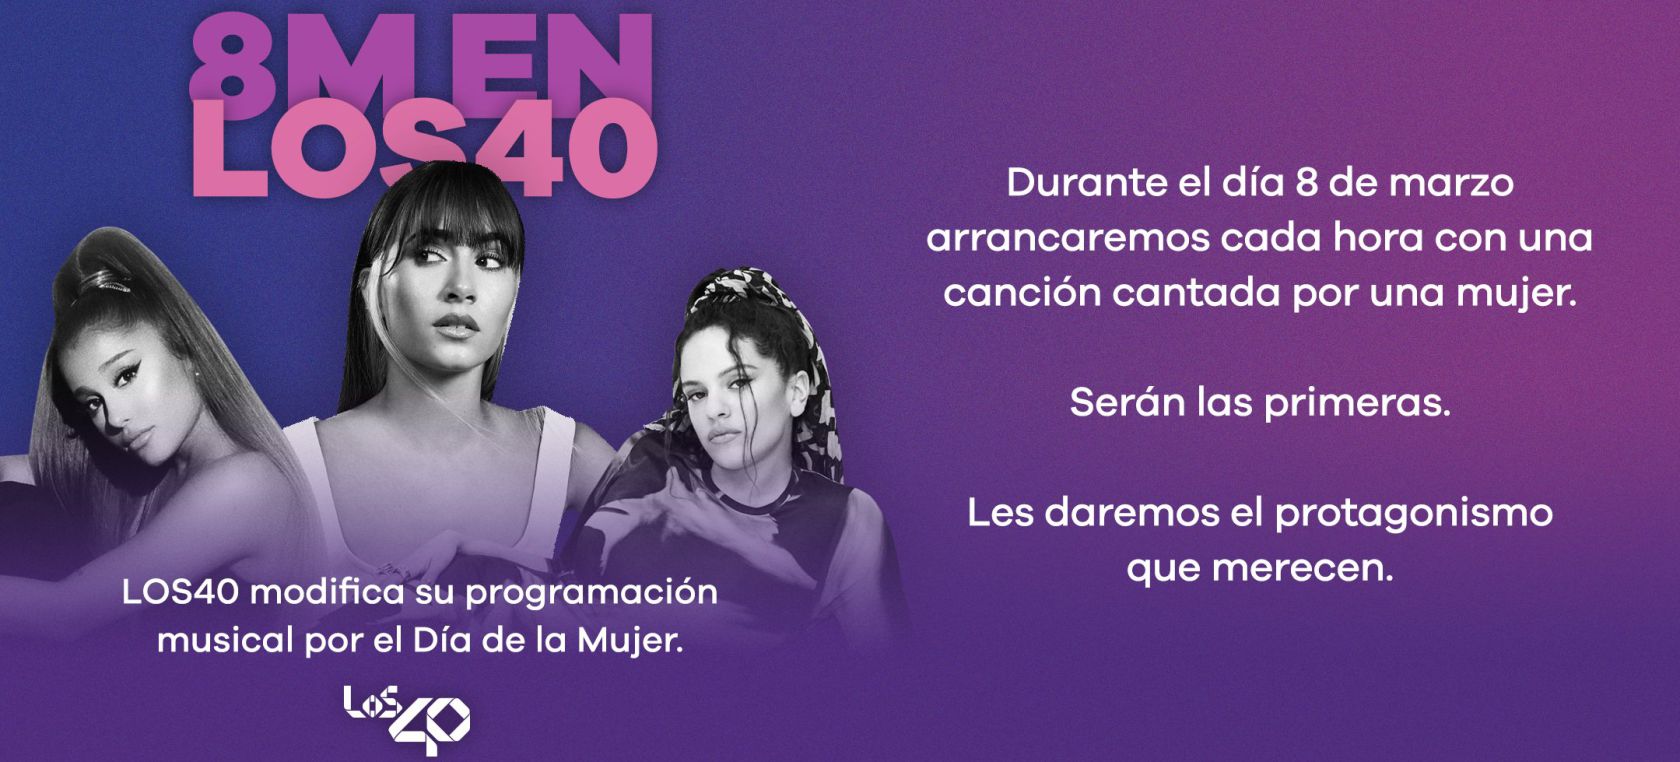 8M en LOS40: programación especial y playlists con protagonistas femeninas, en el Día de la Mujer